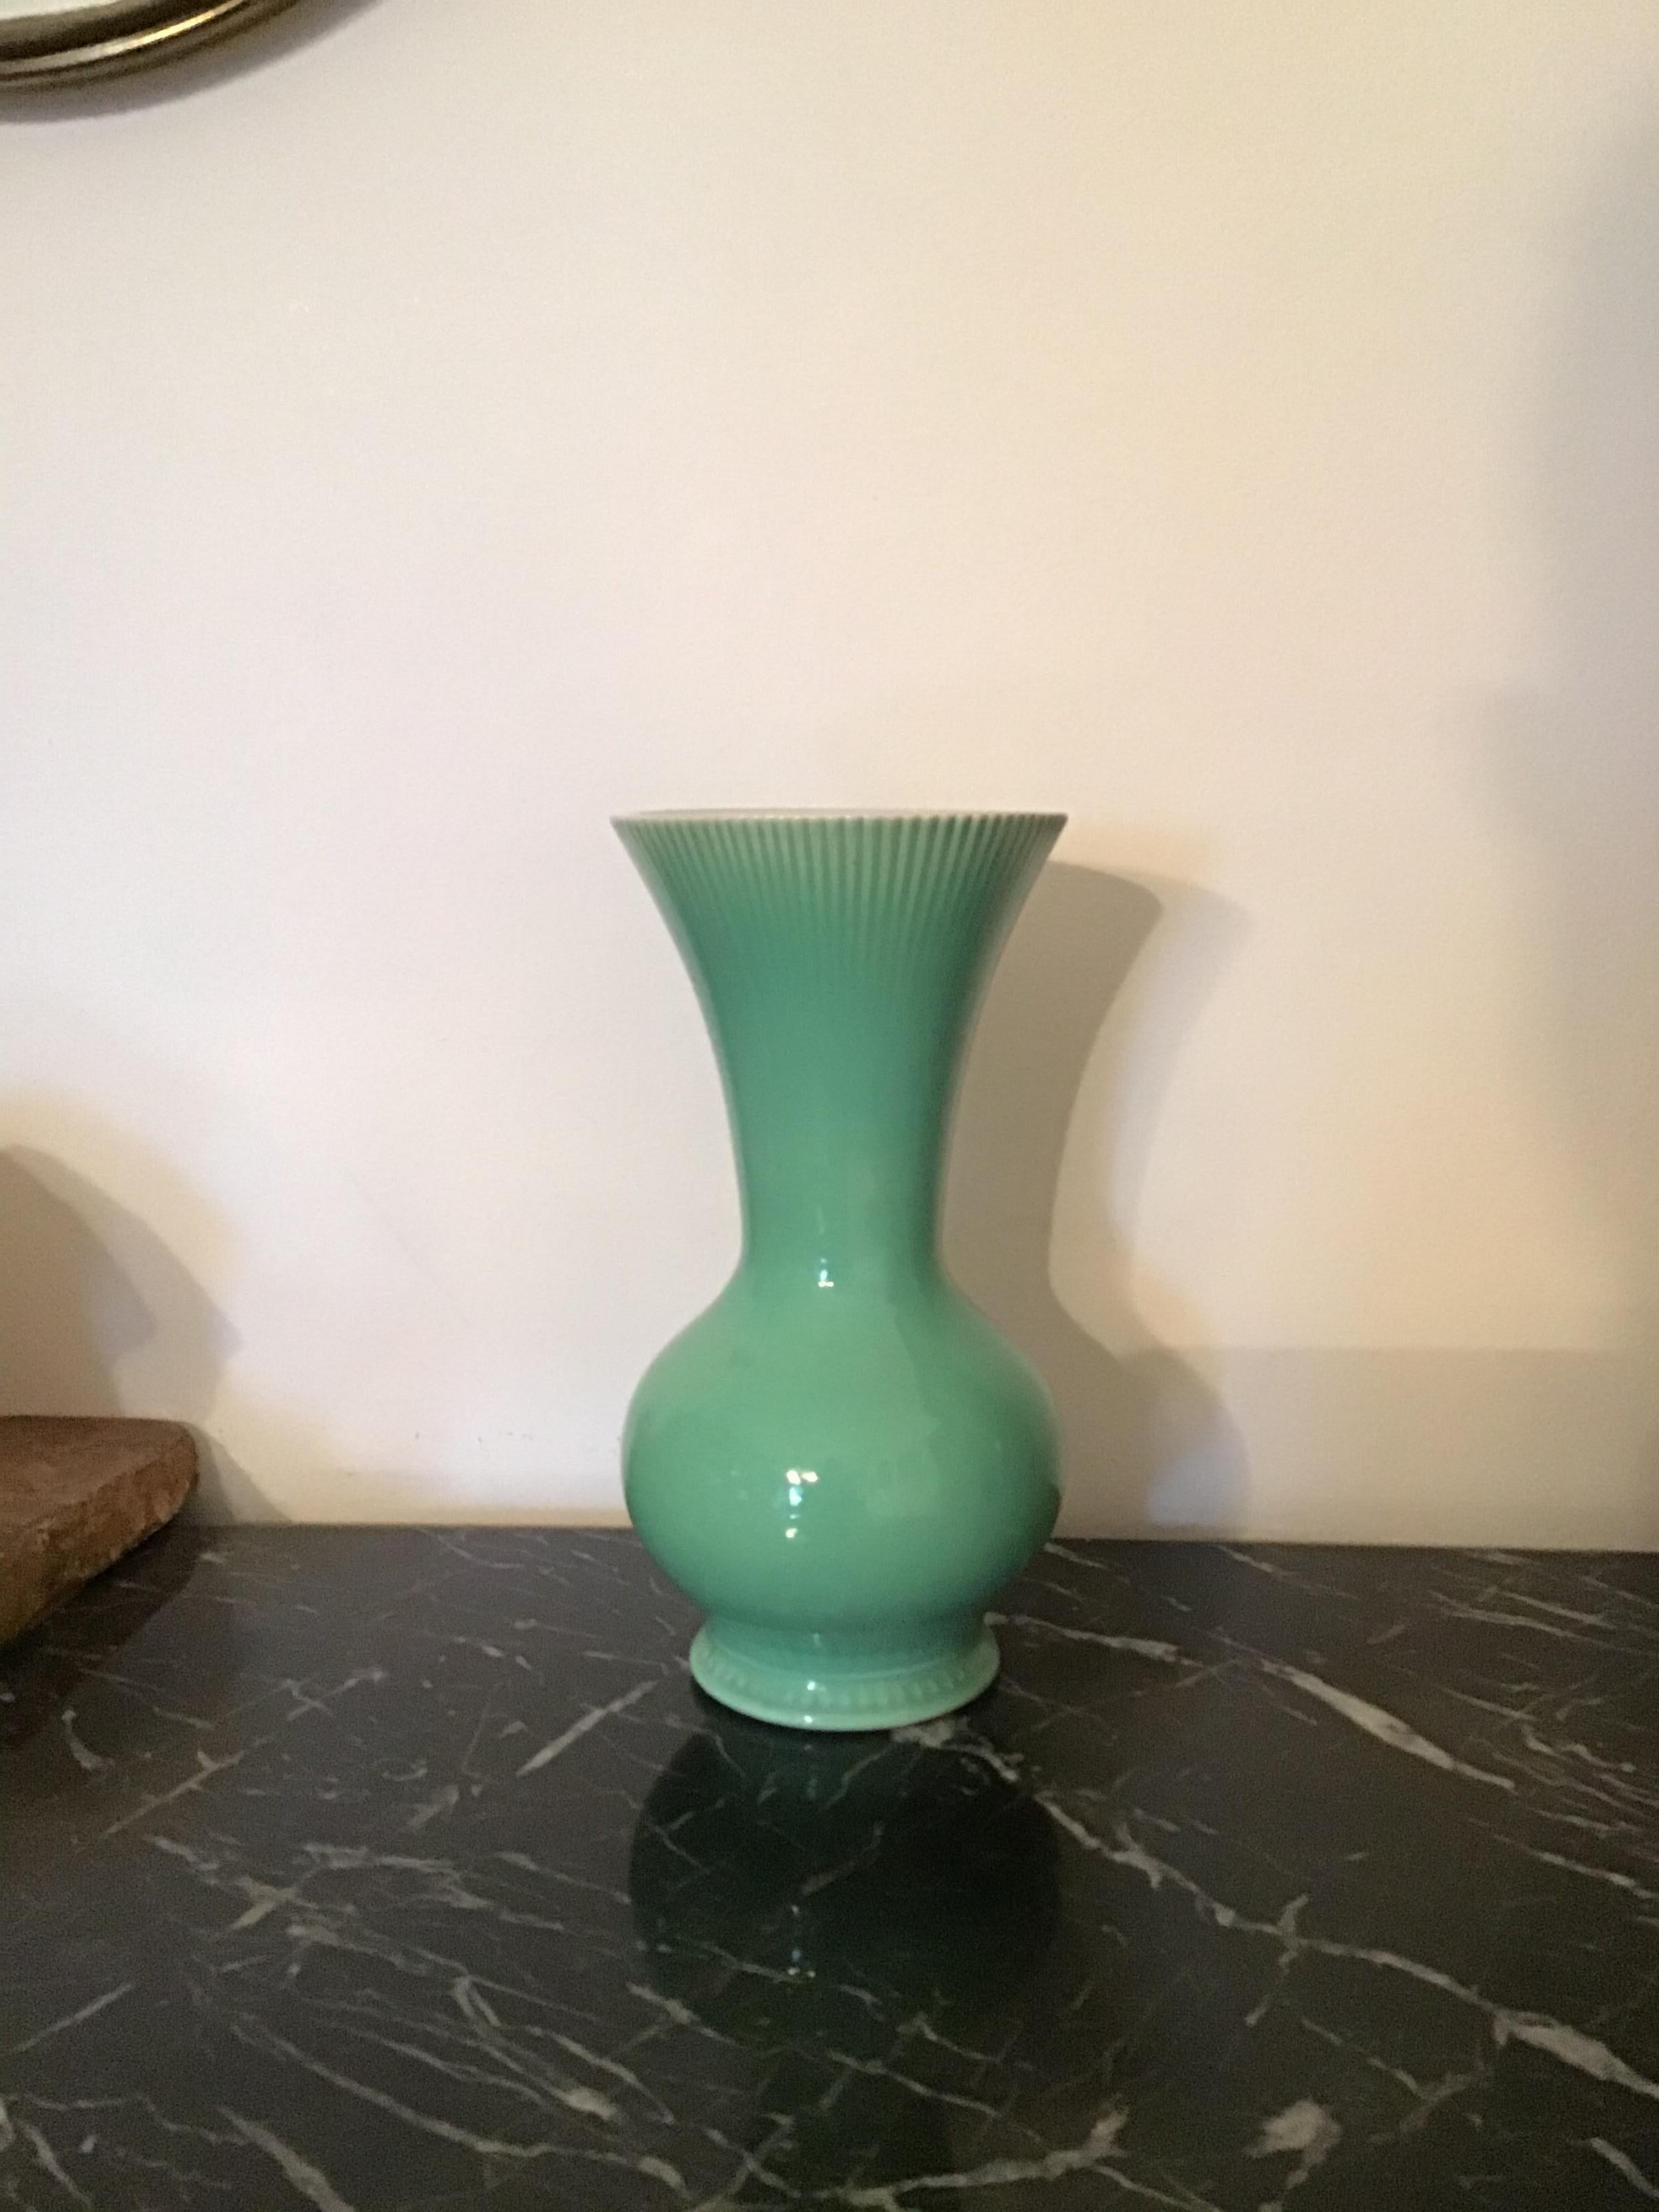 Richard Ginori Giovanni Gariboldi Vase Keramik, 1950, Italien.